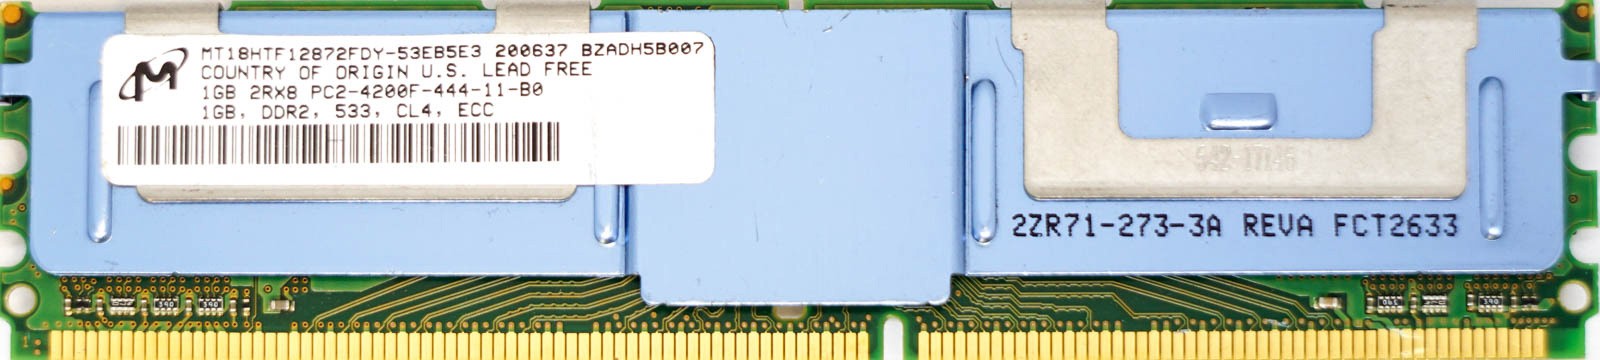 Micron - 1GB PC2-4200F (DDR2-533Mhz, 2RX8)